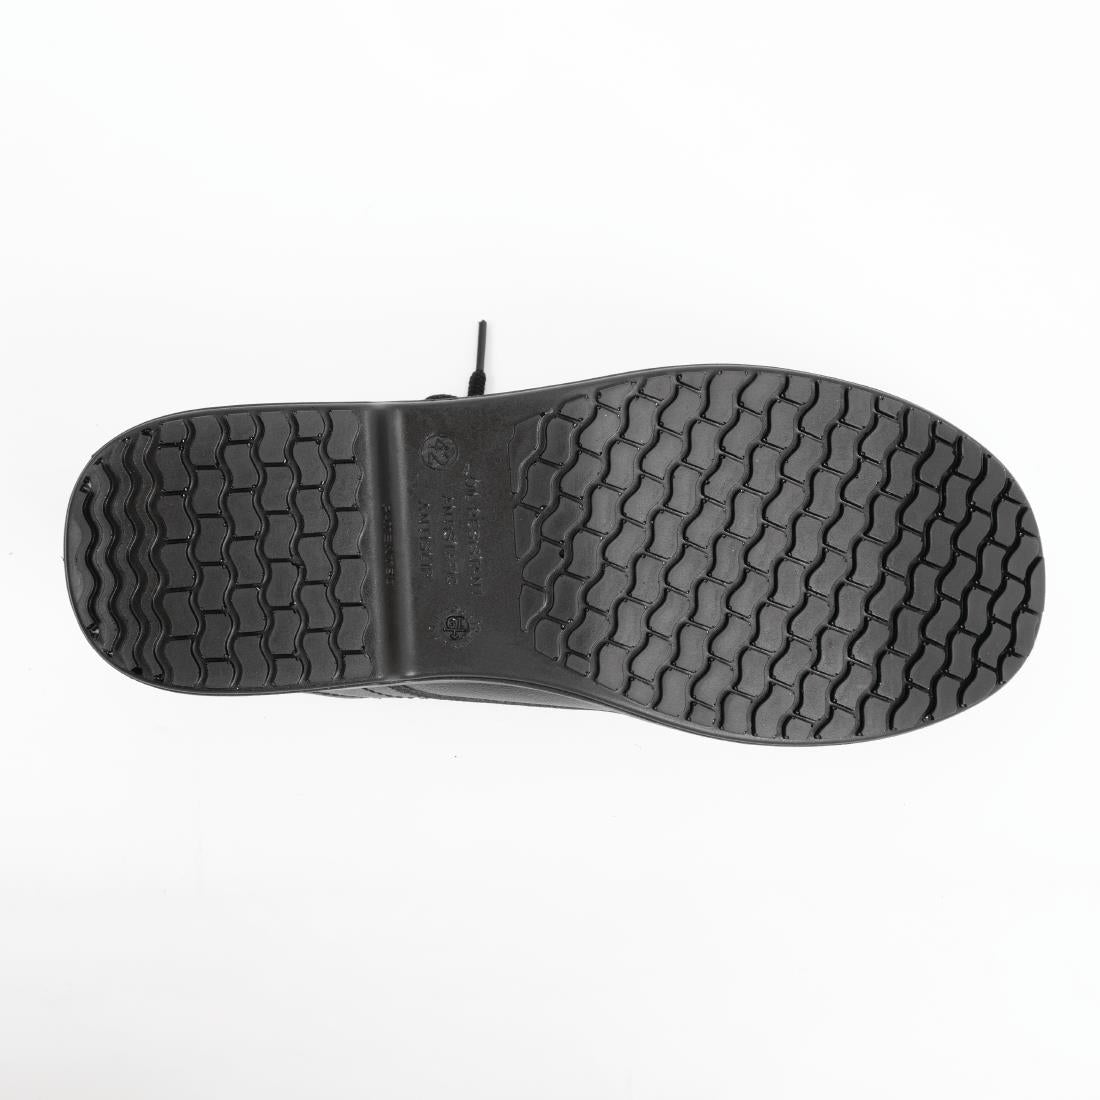 Slipbuster Basic Shoe Slip Resistant